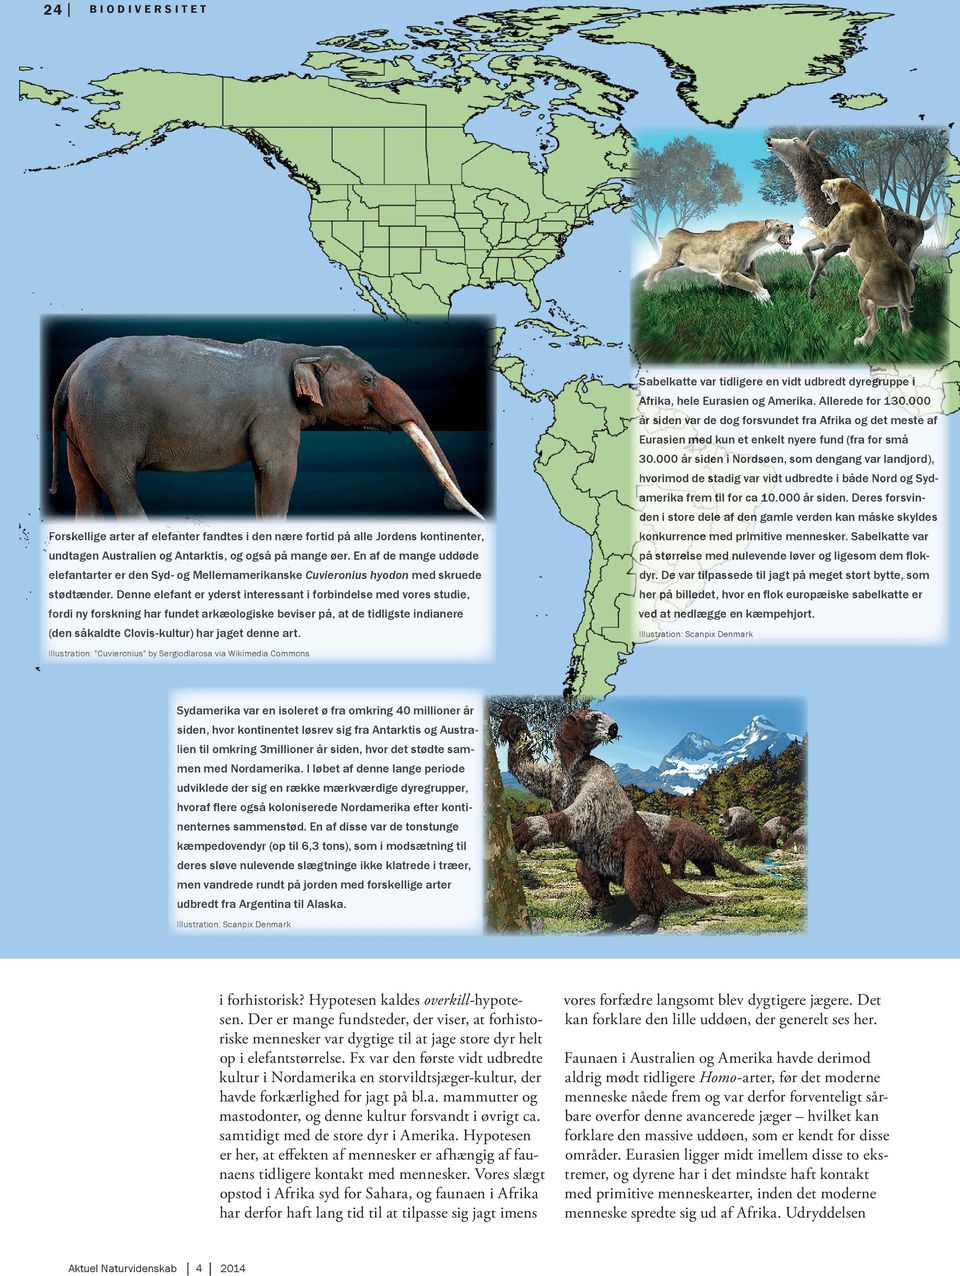 Denne elefant er yderst interessant i forbindelse med vores studie, fordi ny forskning har fundet arkæologiske beviser på, at de tidligste indianere (de n såkaldte Clovis-kultur) har jaget denne art.